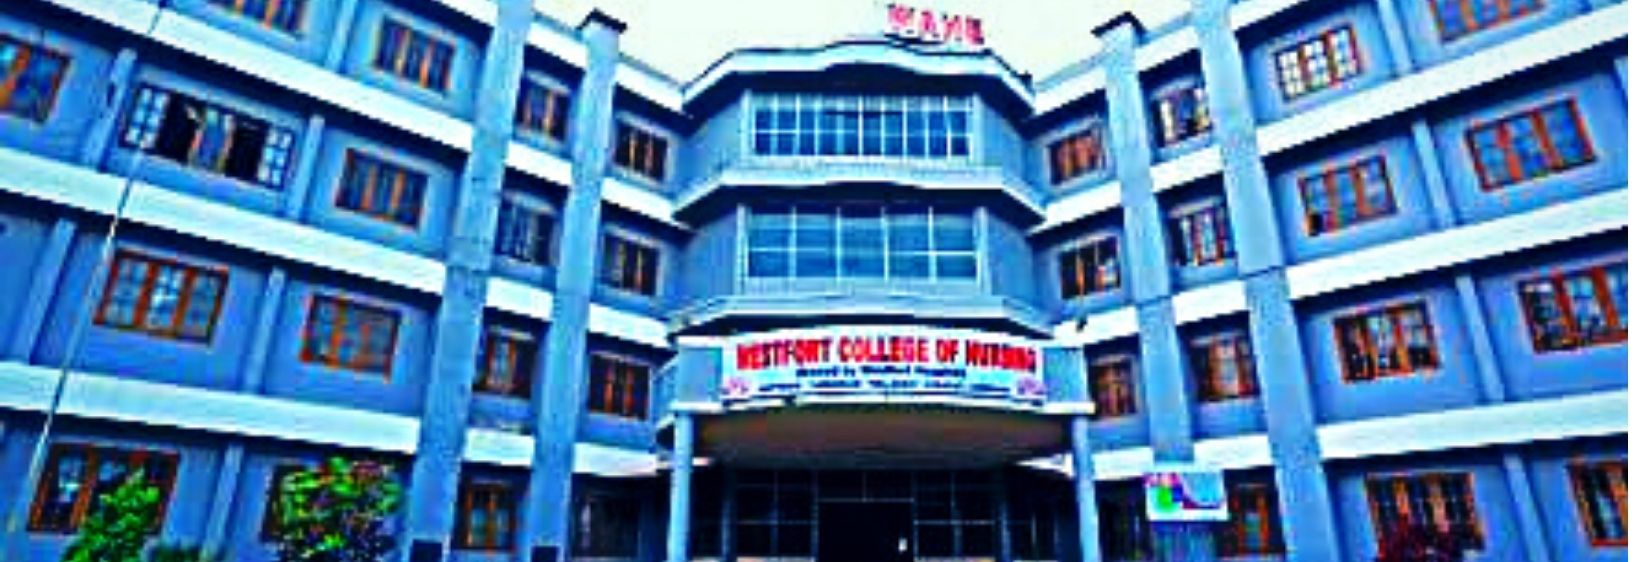 West Fort College of Nursing -  Thrissur